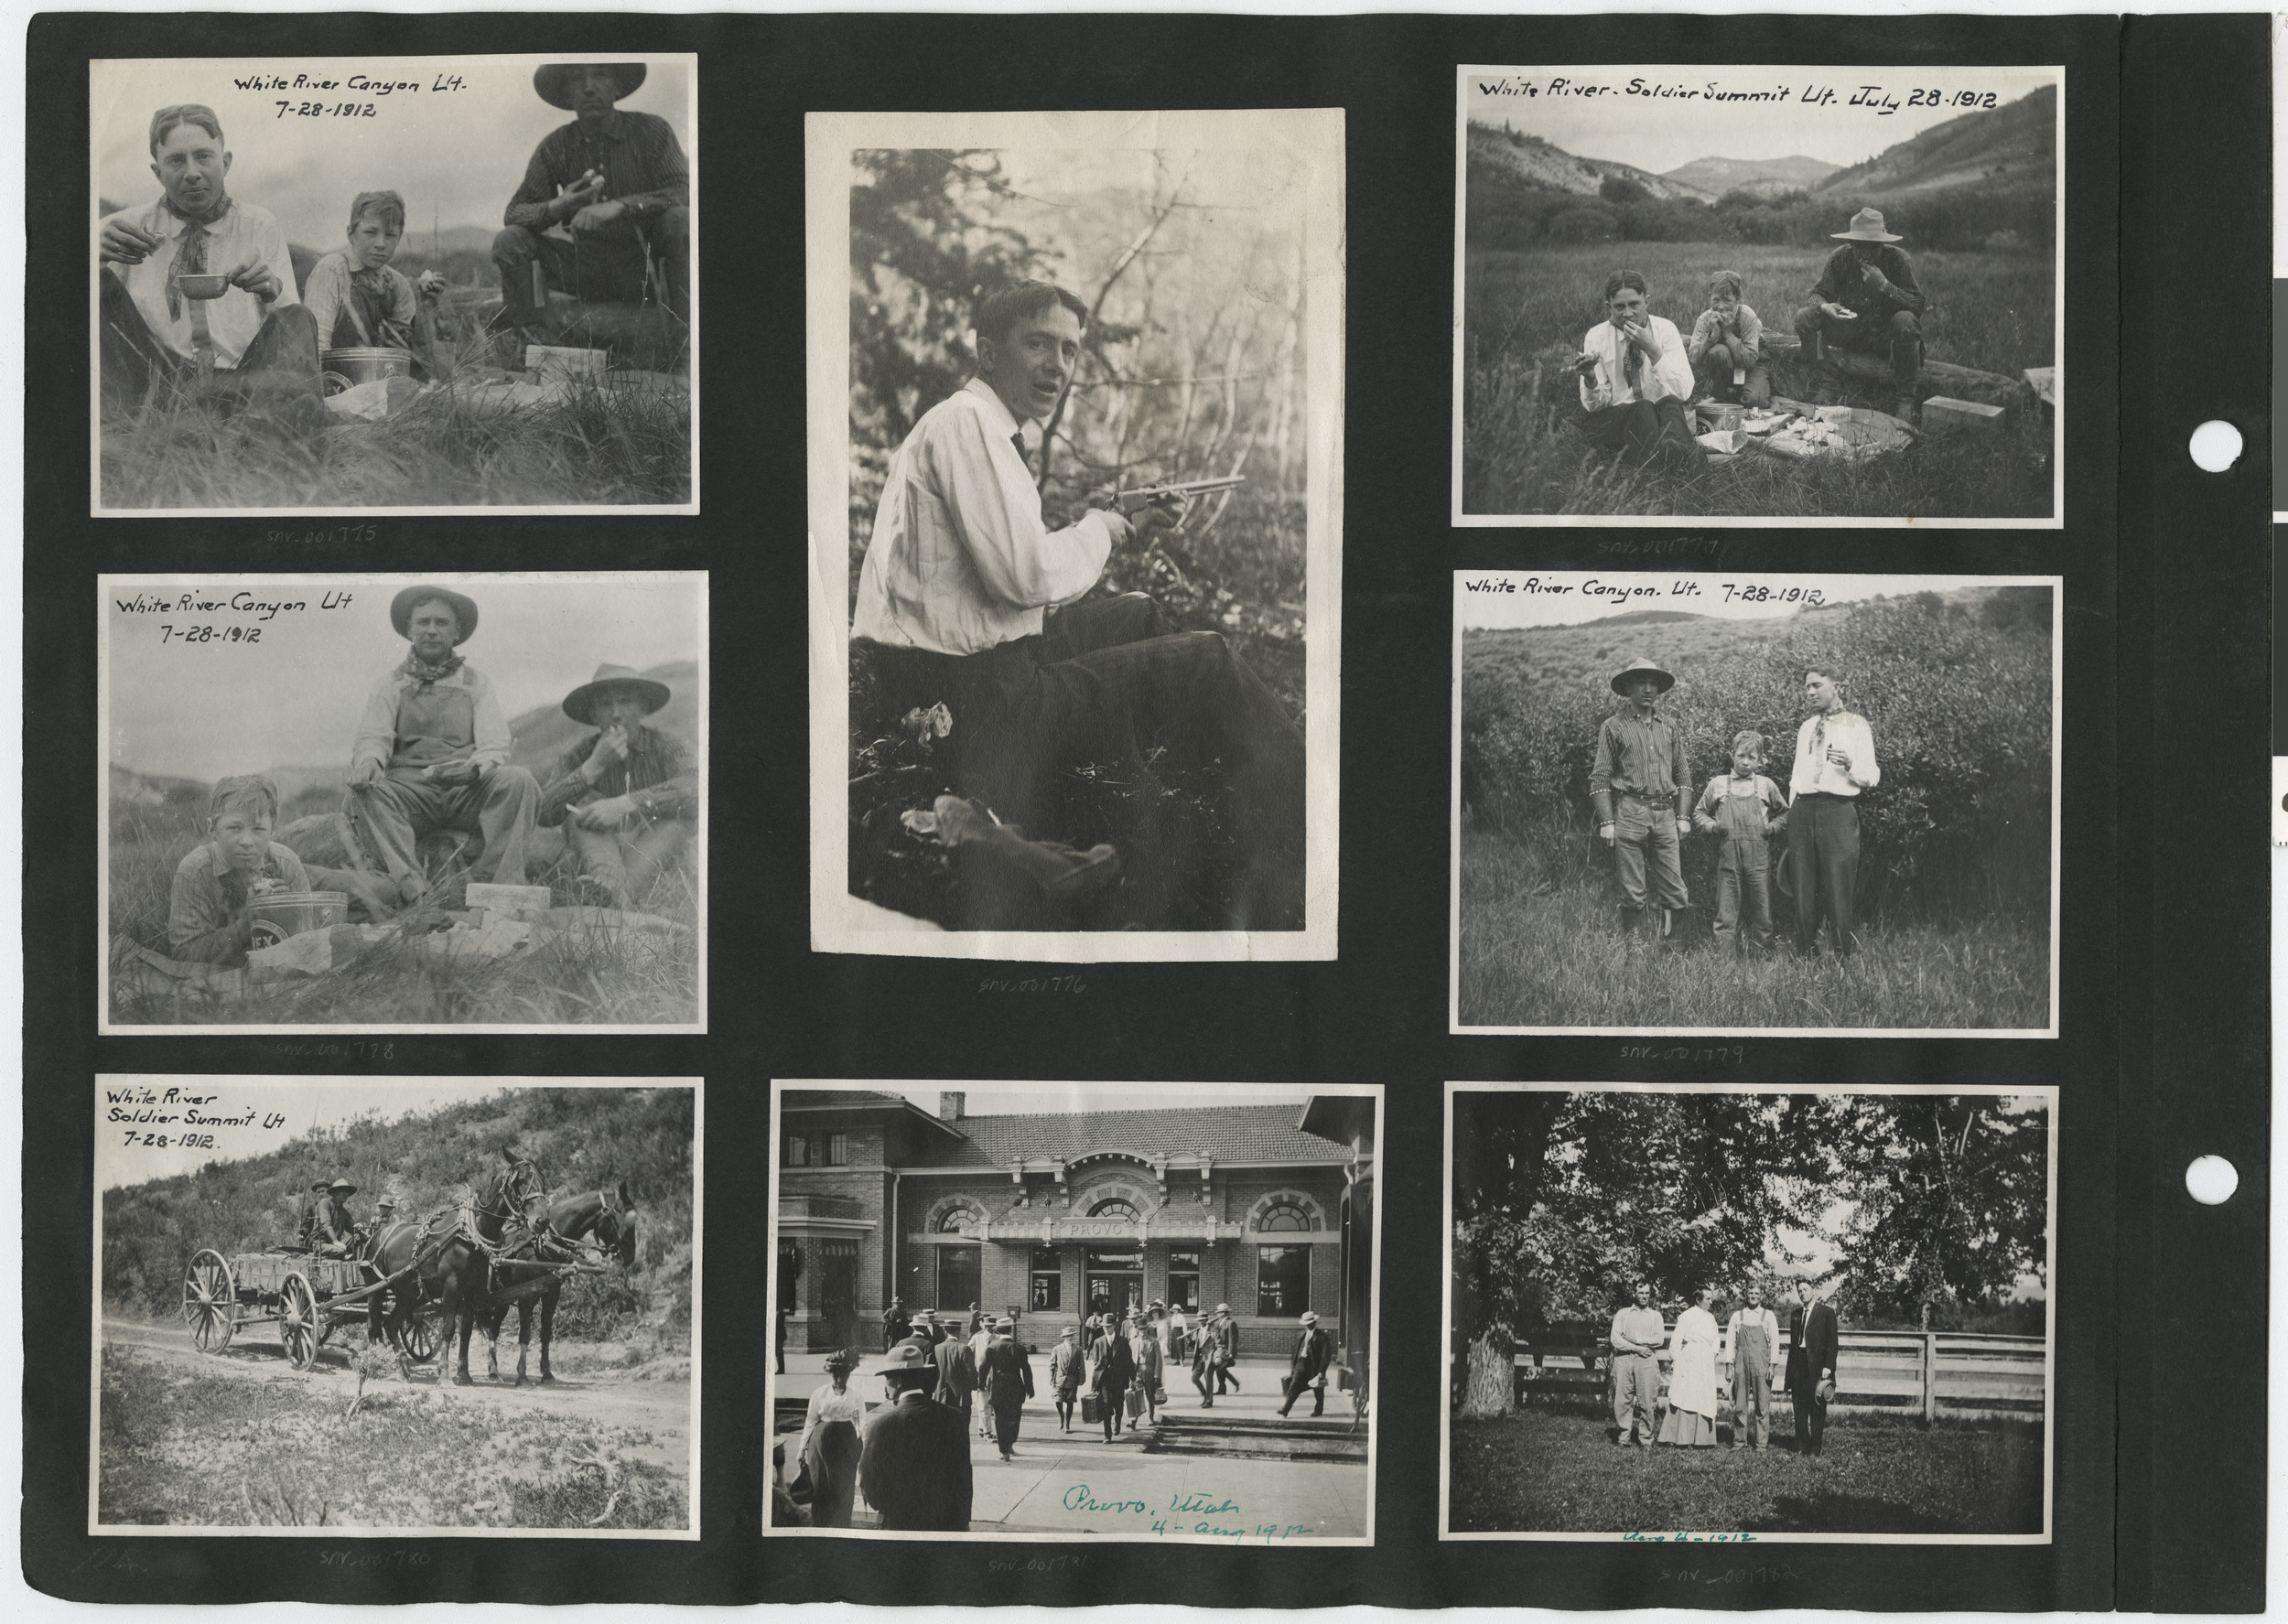 Photograph album 2, Ferron-Bracken Collection, circa 1905-1935, page 16